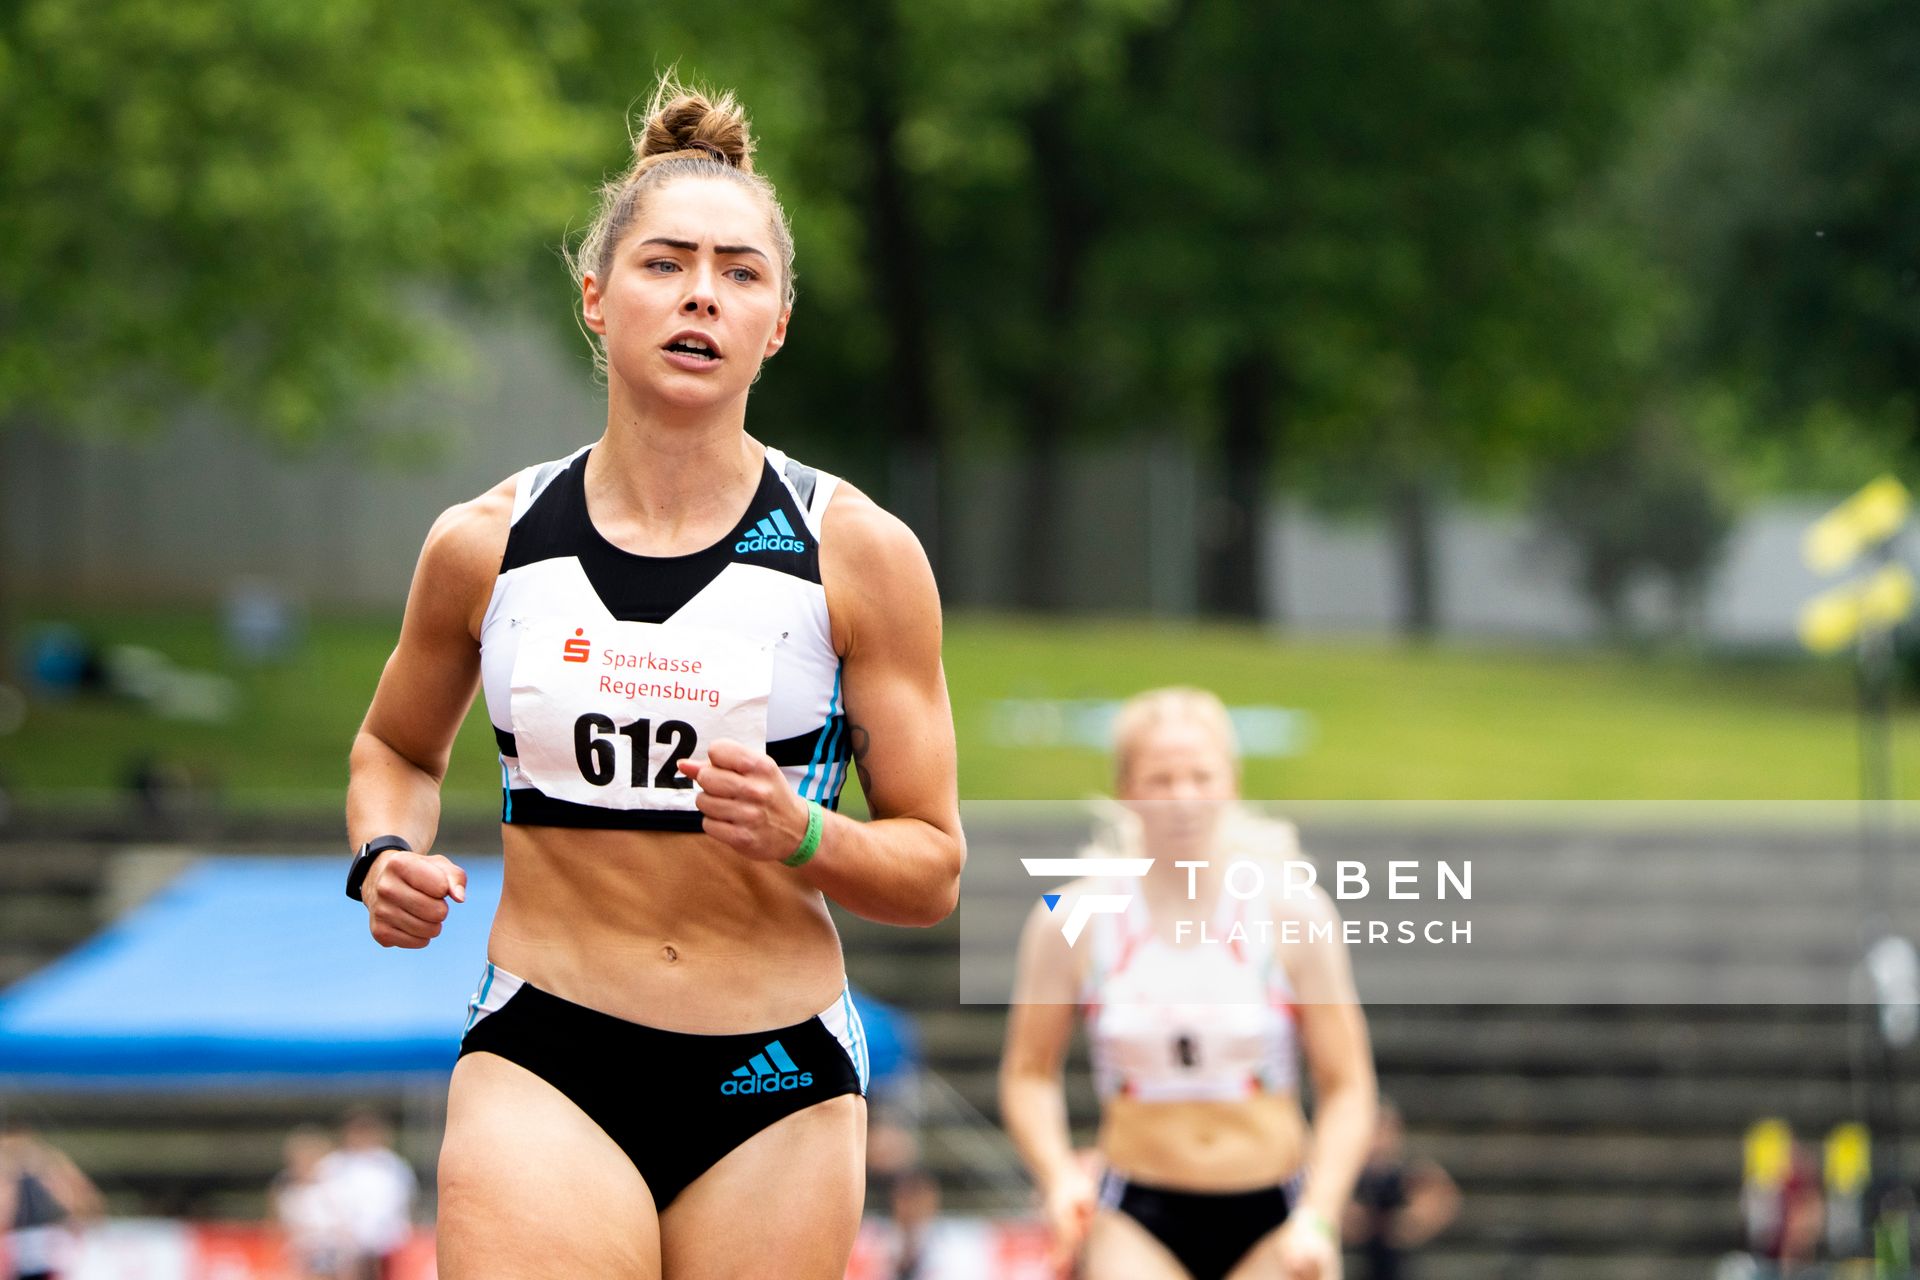 Gina Lueckenkemper (SCC Berlin) ueber 100m am 04.06.2022 waehrend der Sparkassen Gala in Regensburg